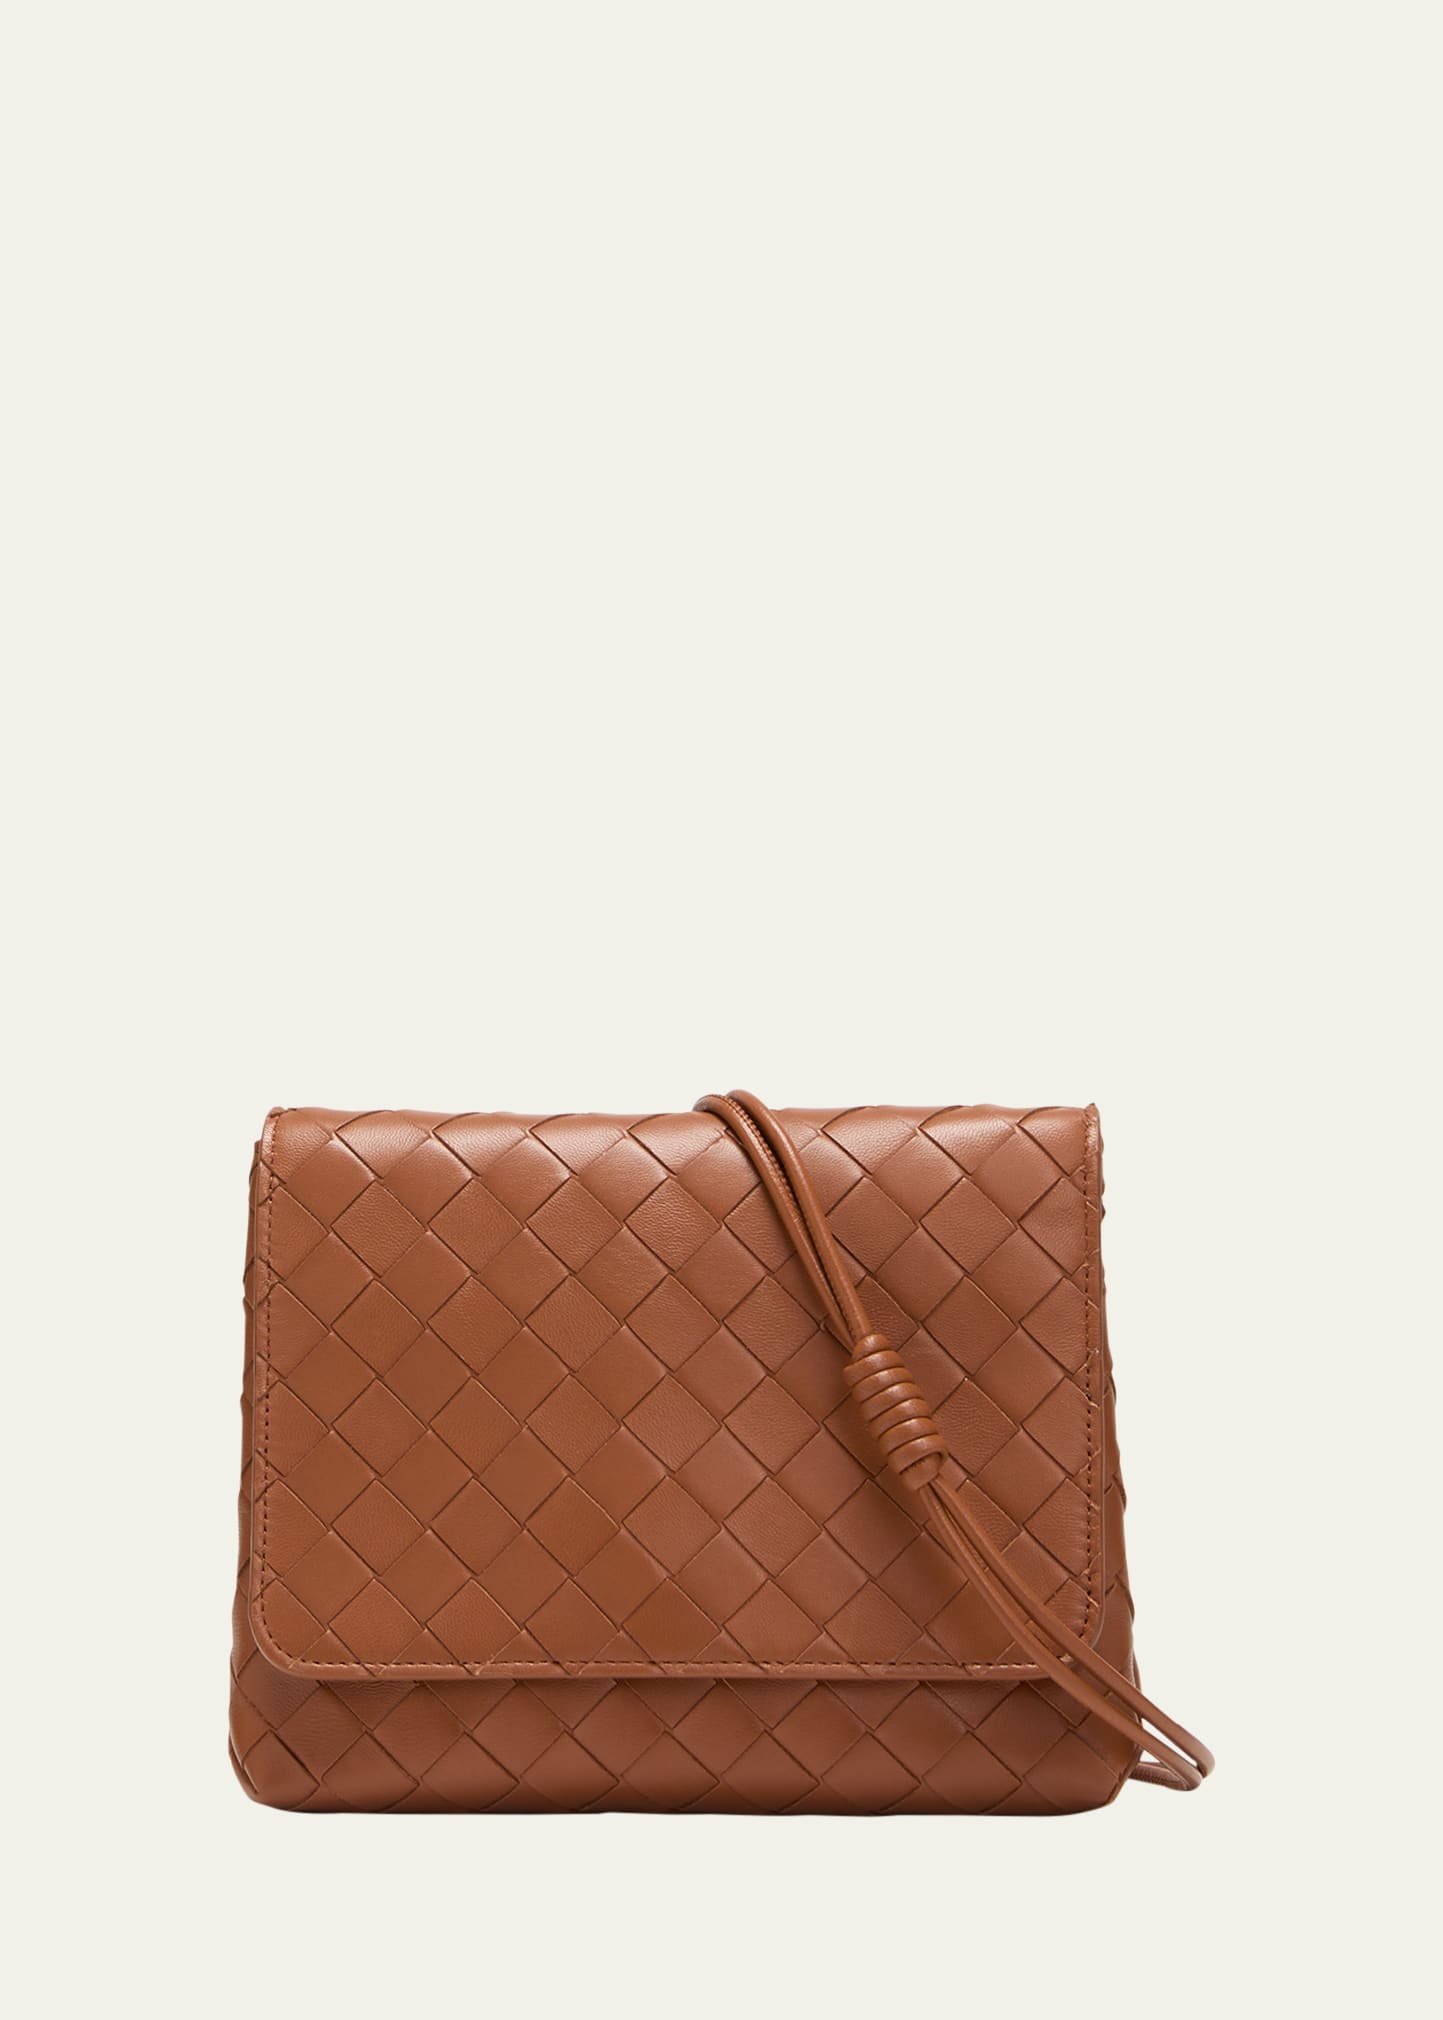 BOTTEGA VENETA Intrecciato leather pouch, Sale up to 70% off